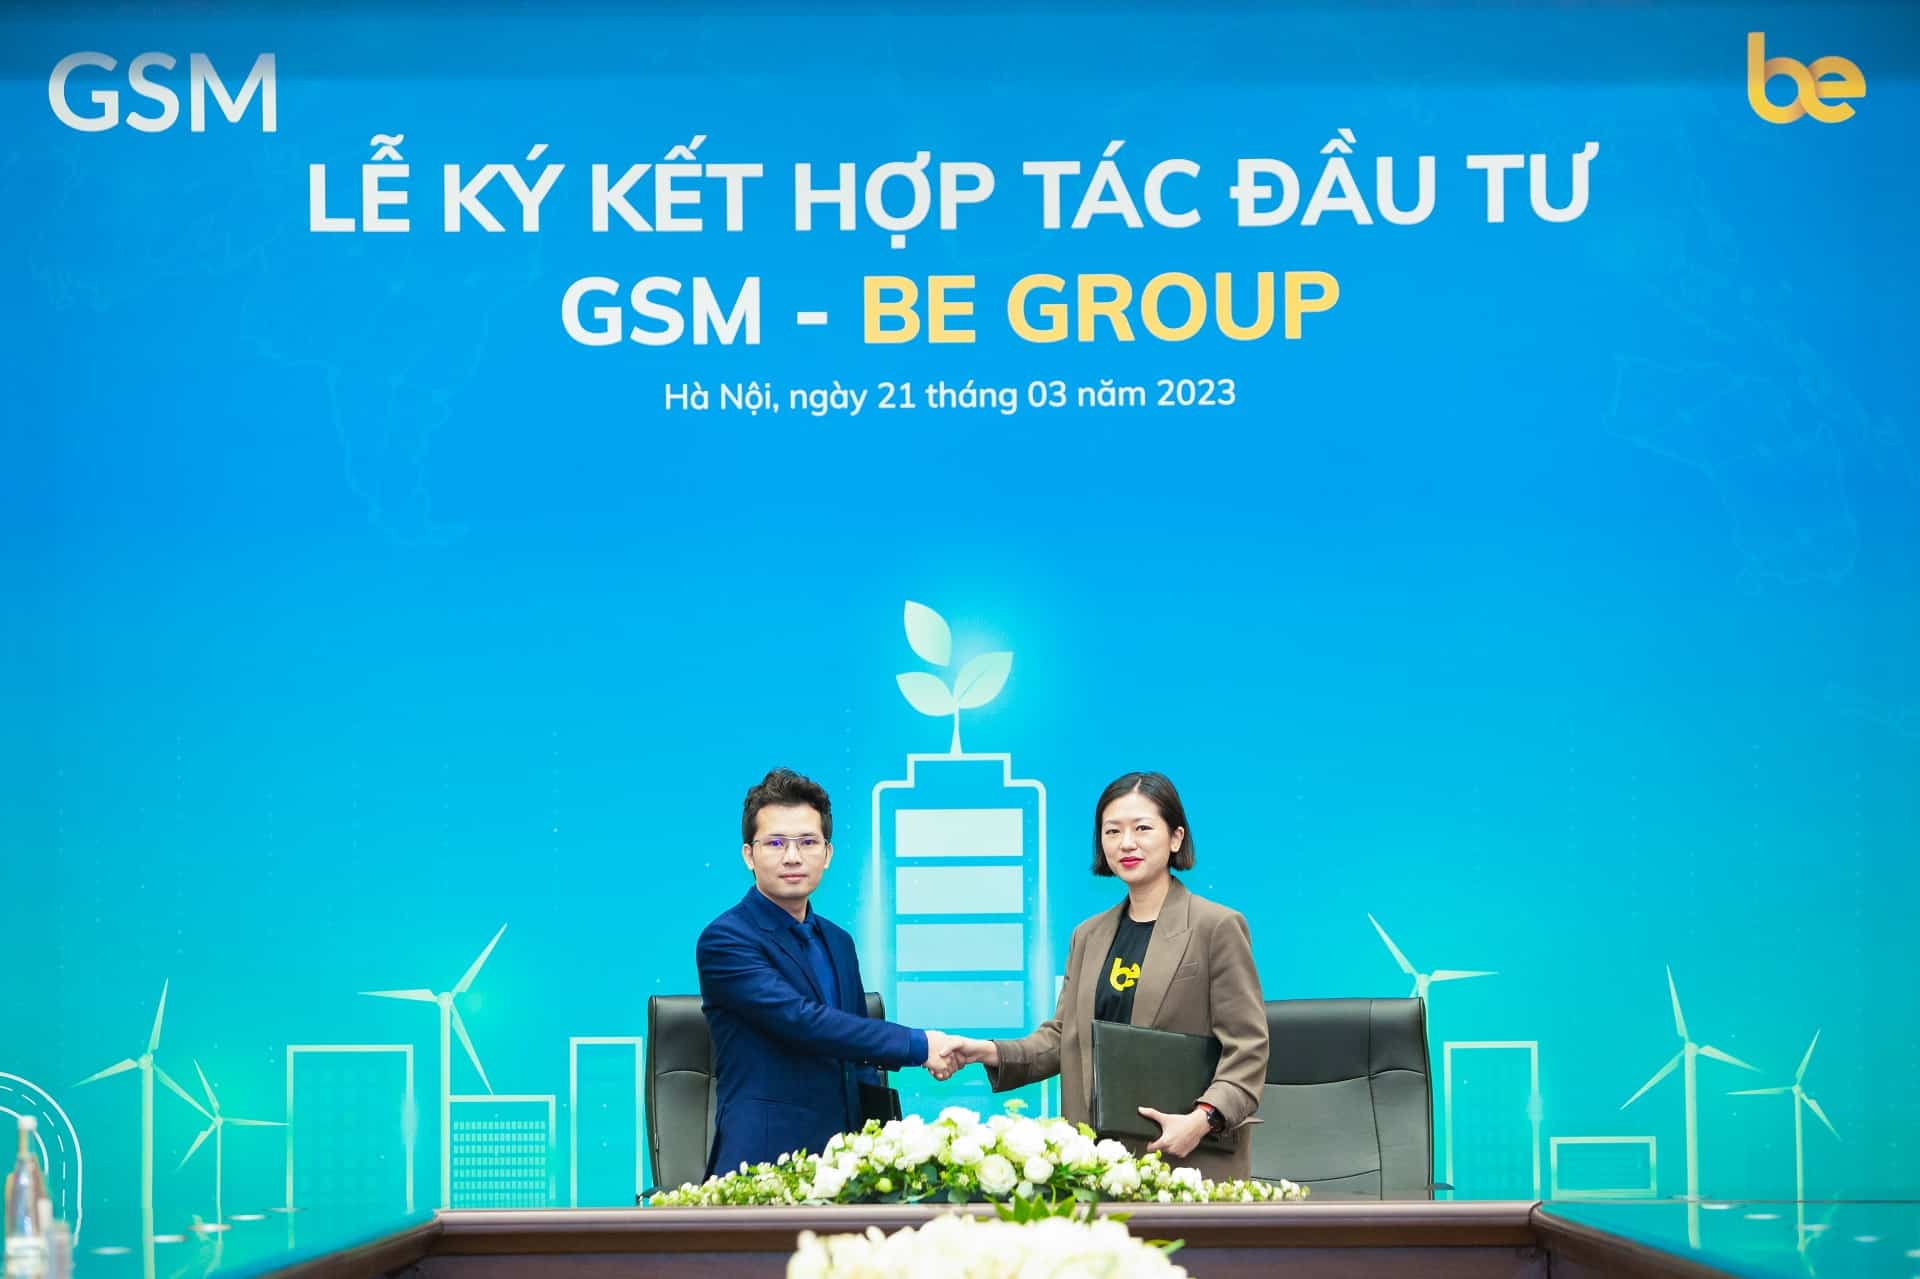 GSM đầu tư vào Be Group, hỗ trợ tài xế chuyển đổi sang xe điện gsm-be-group-2.jpeg